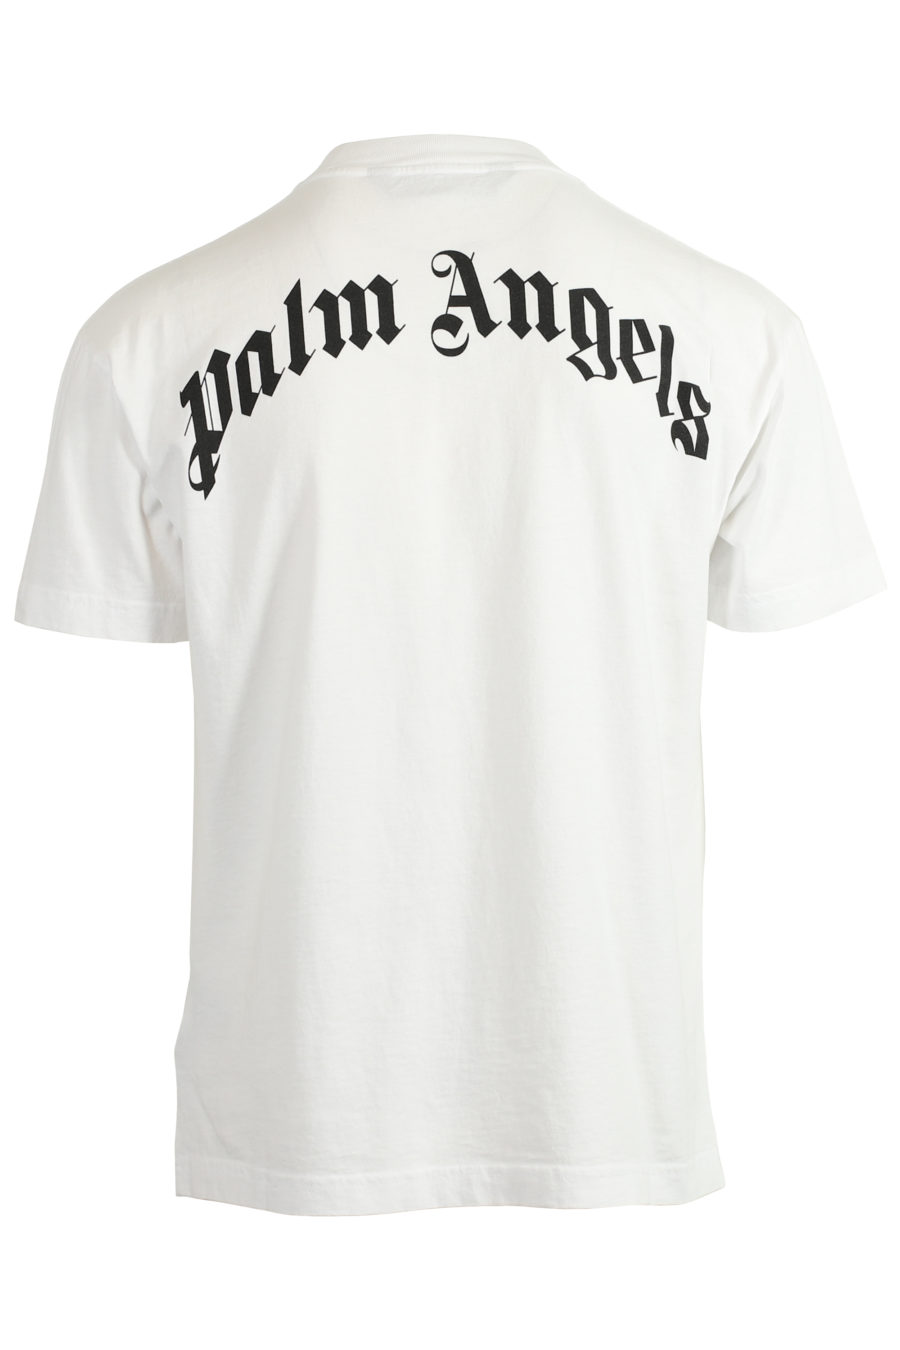 Weißes T-Shirt mit Bärenaufdruck und Logo auf dem Rücken - IMG 3727